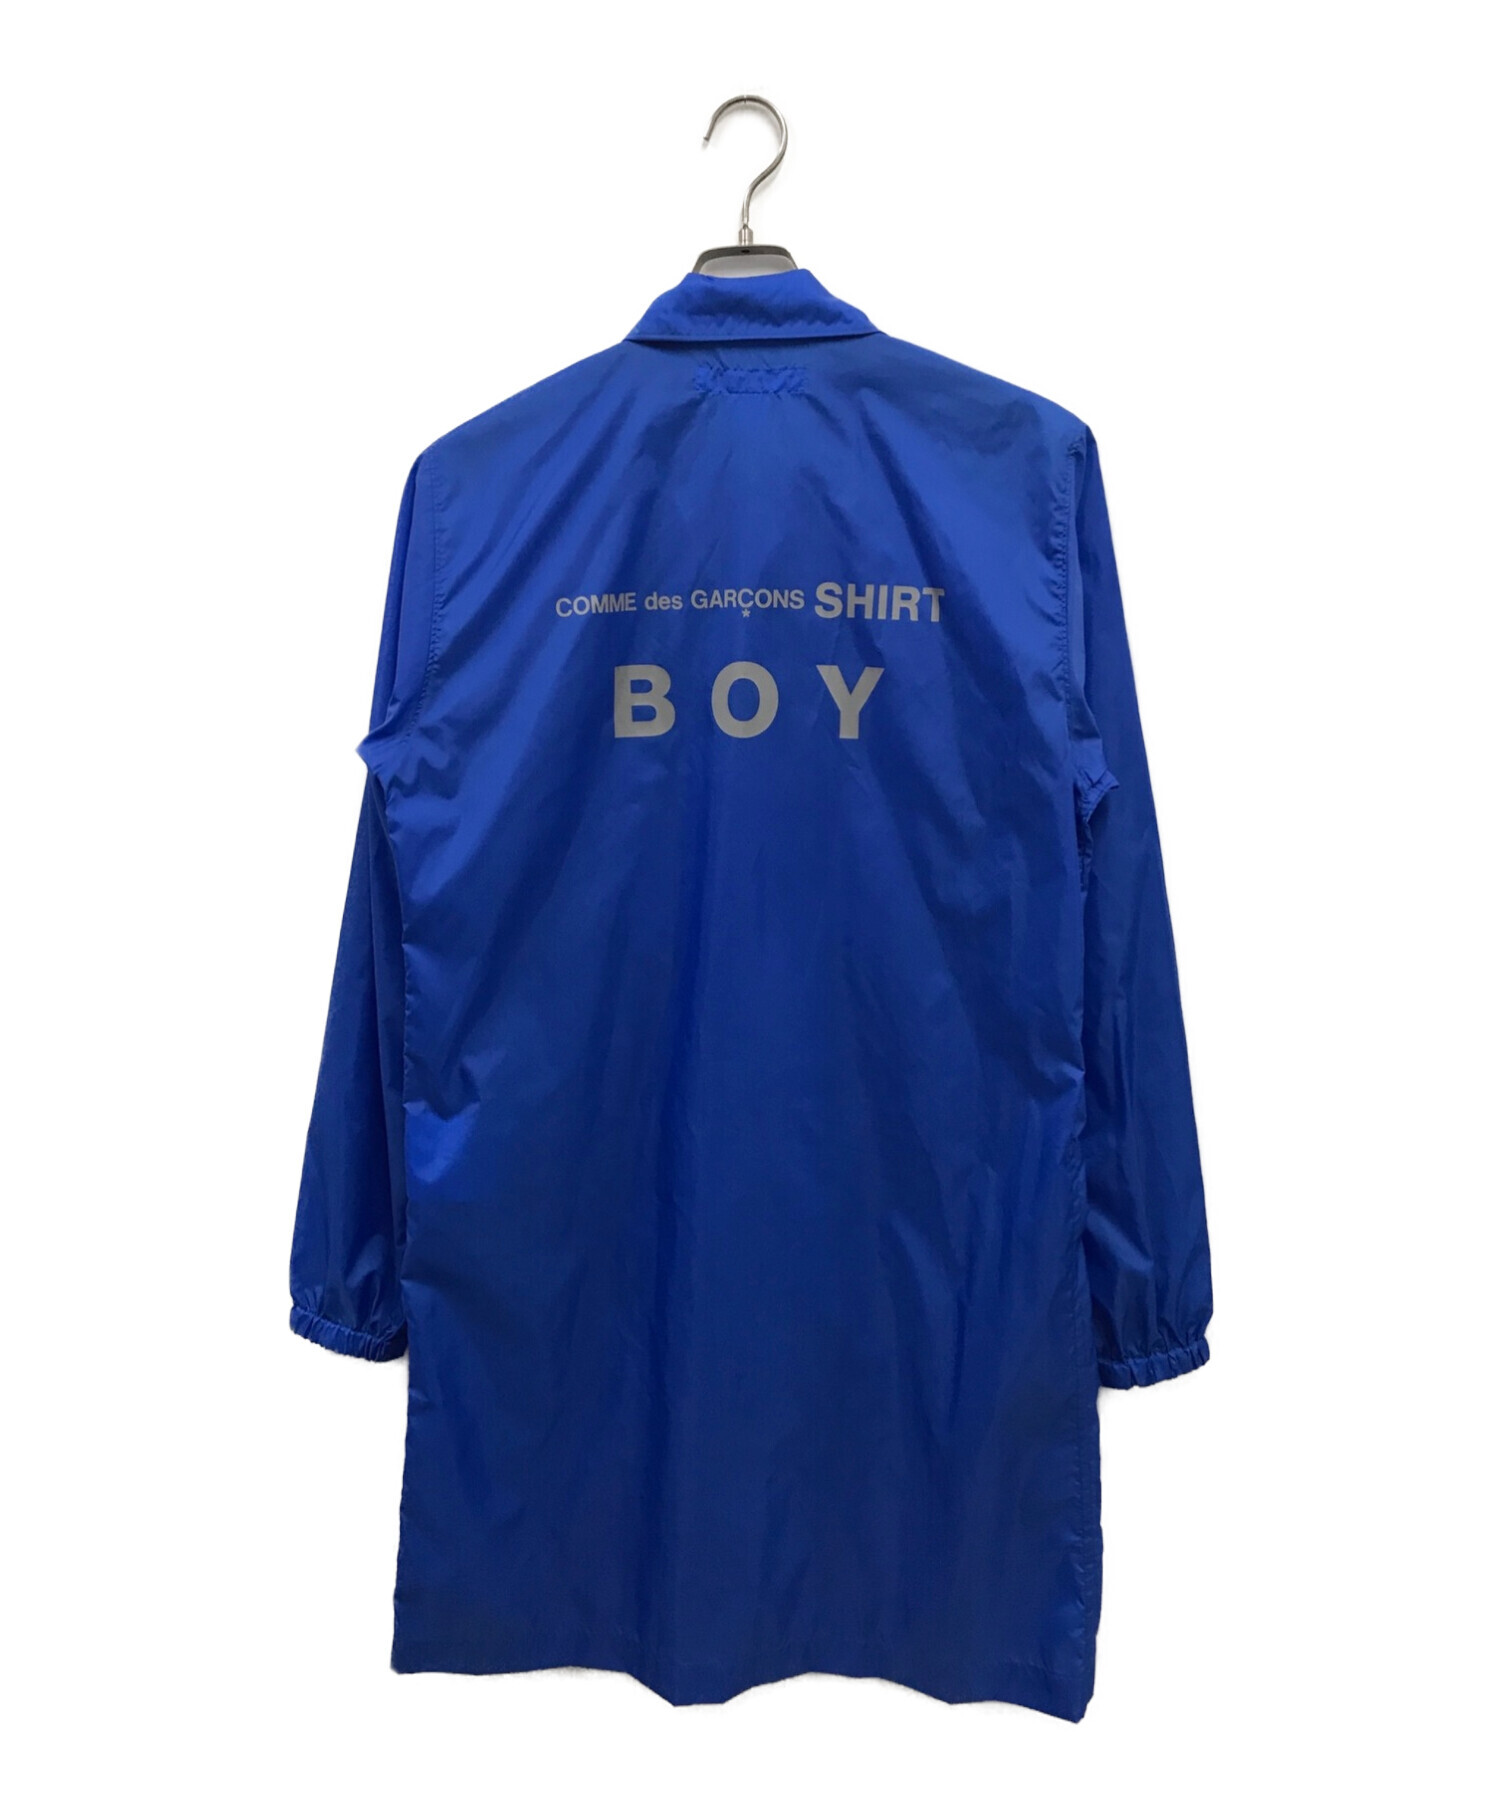 COMME des GARCONS SHIRT BOY (コムデギャルソンシャツ ボーイ) ナイロンコート/S24922 ブルー サイズ:S